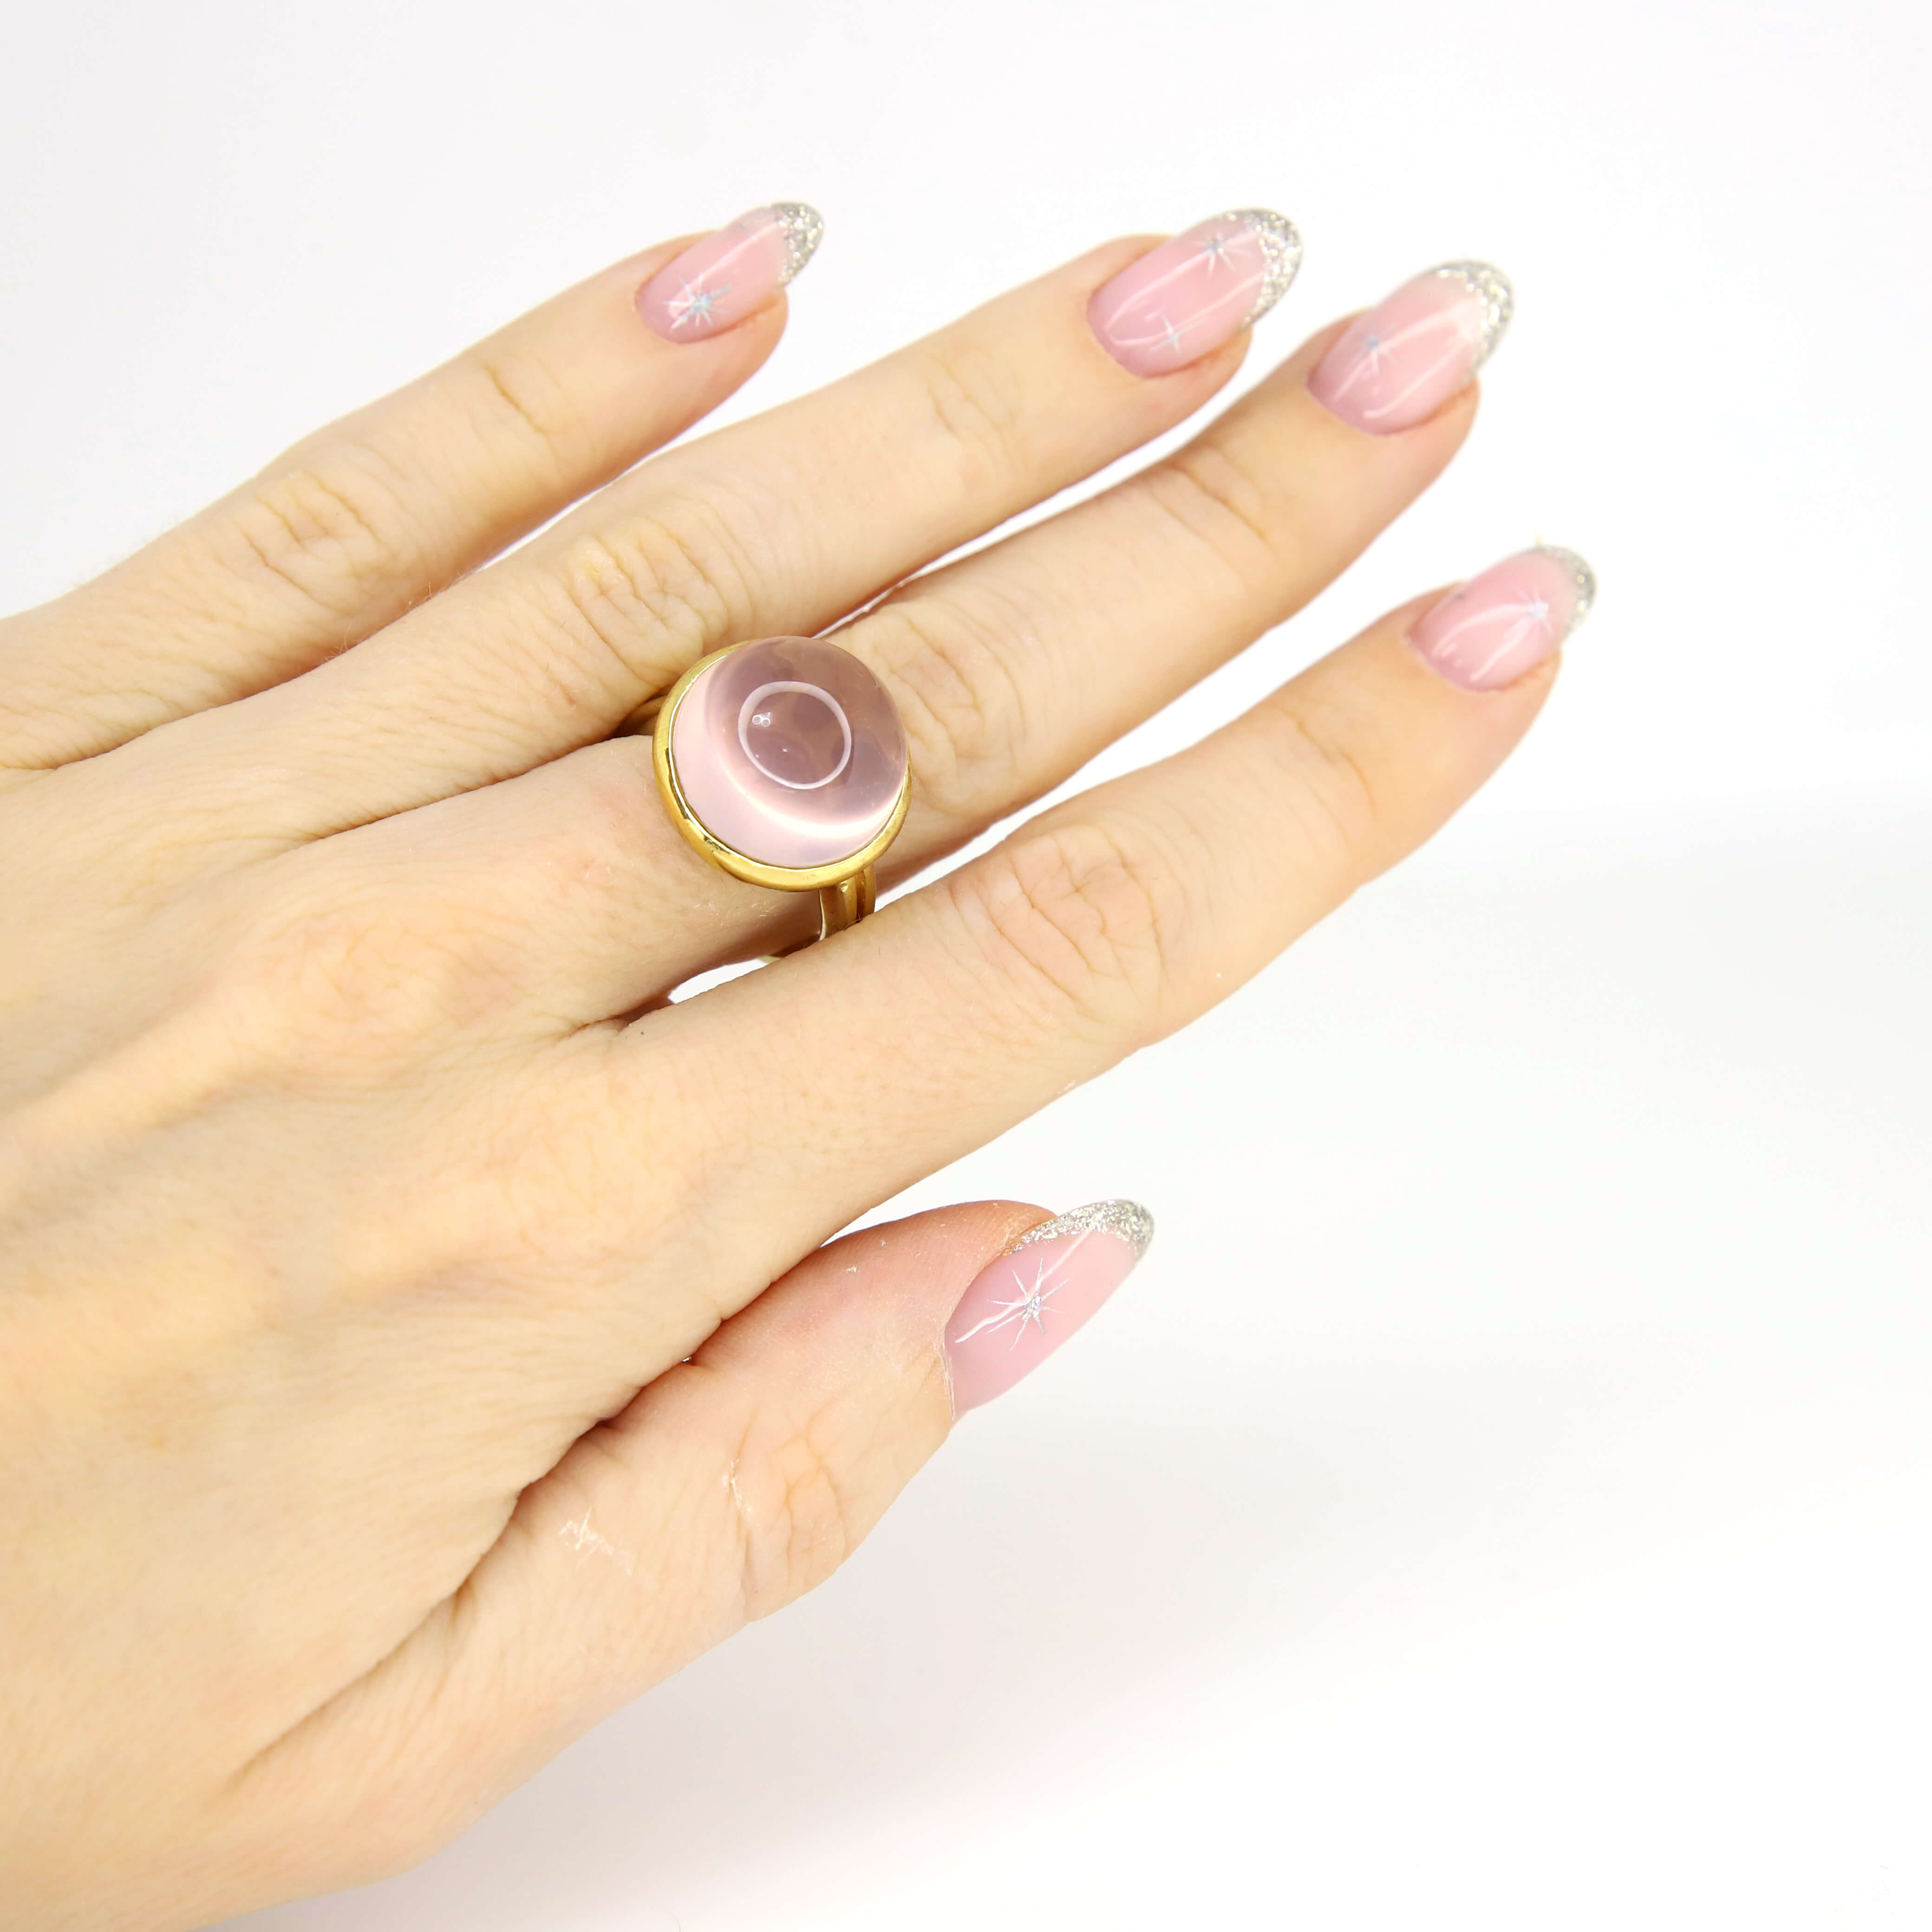 Кольцо 925  с кварцем размер 17,5 ВИДЕО, цвет Розовый, фото 1